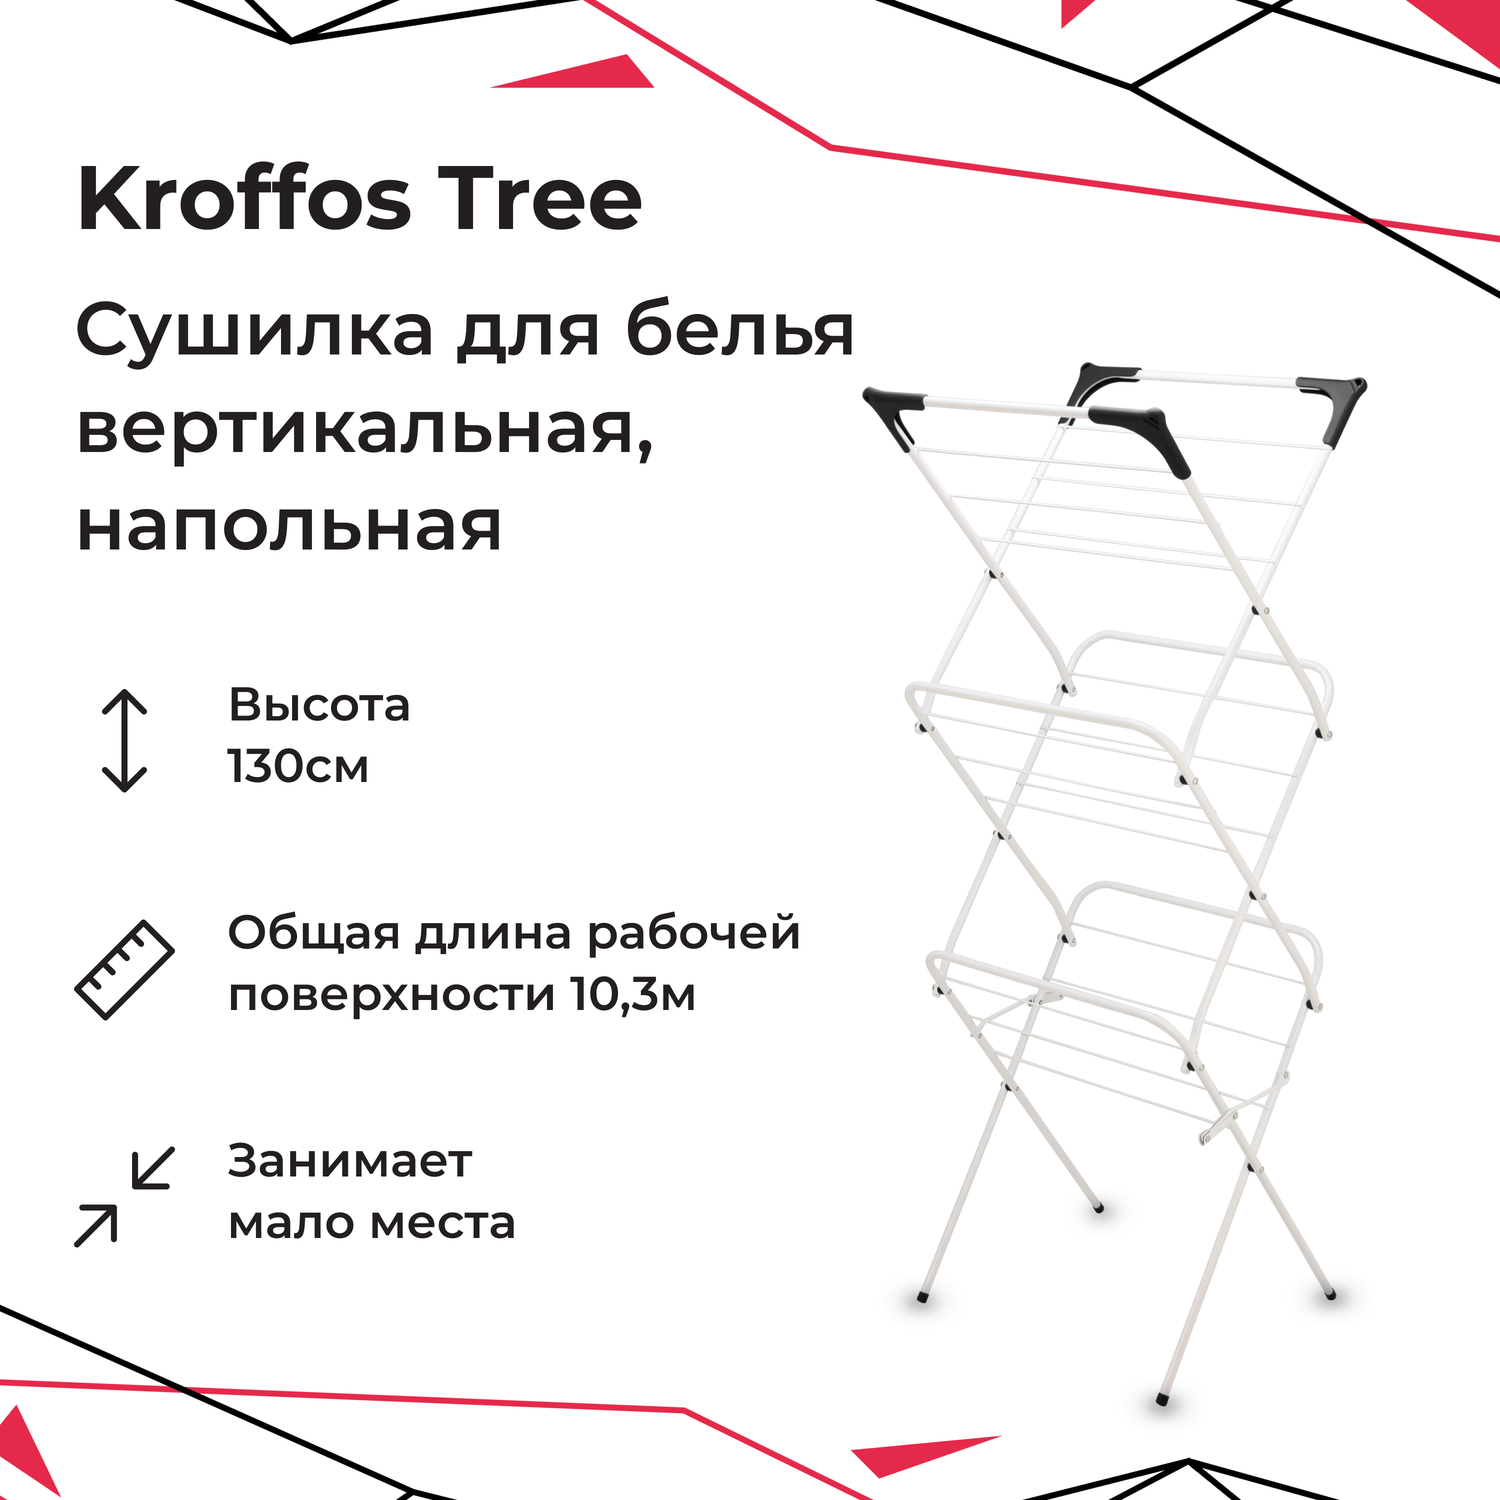 Сушилка для белья KROFFOS tree вертикальная - фото 1